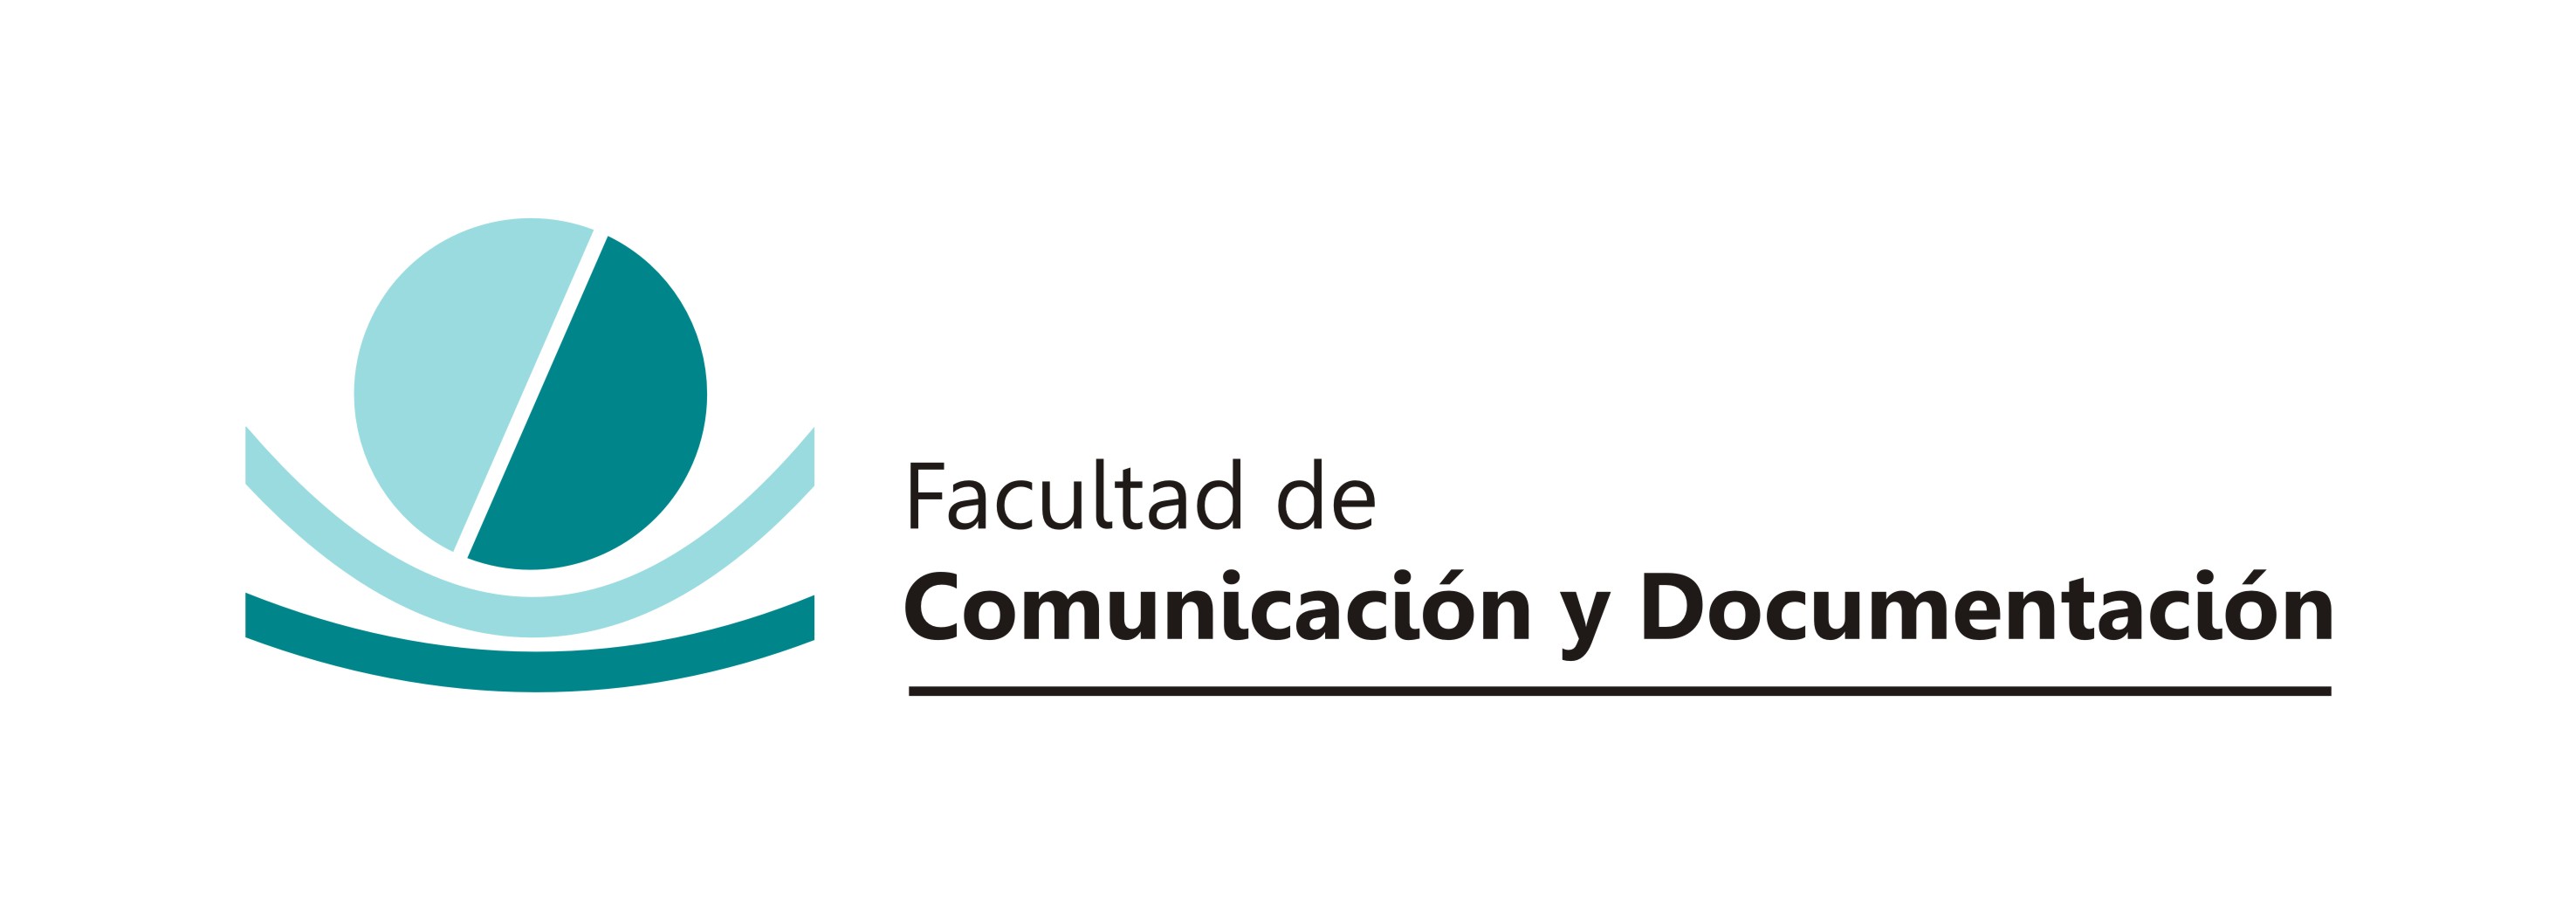 Facultad de Comunicación y Documentación